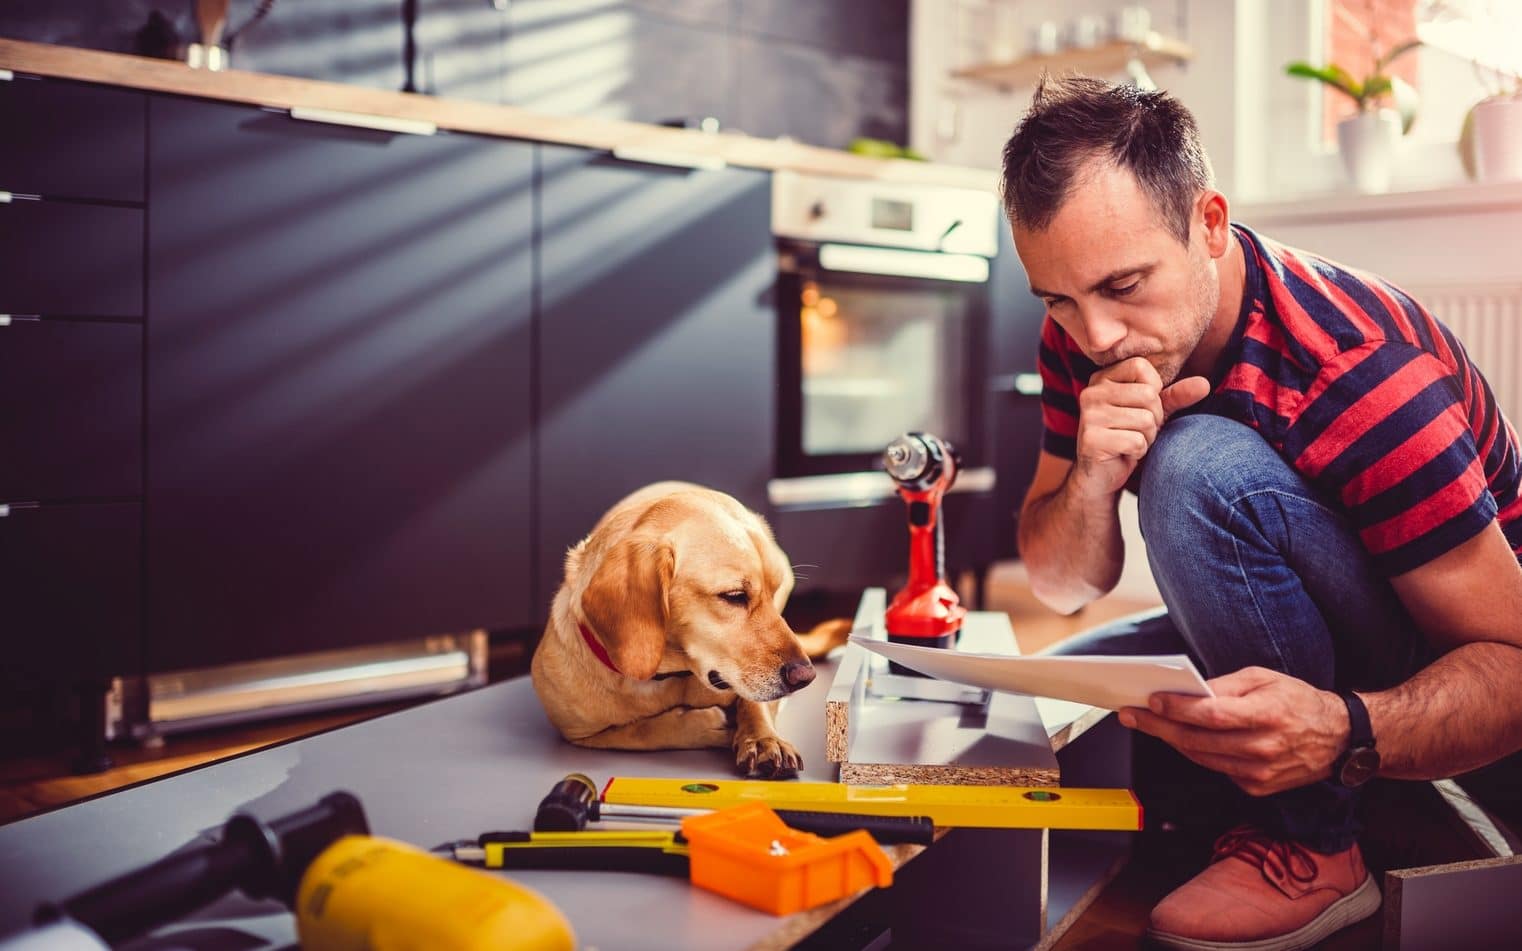 Mężczyzna w koszulce w paski i pies podczas składania mebli w kuchni, wokół leżą narzędzia potrzebne do majsterkowania